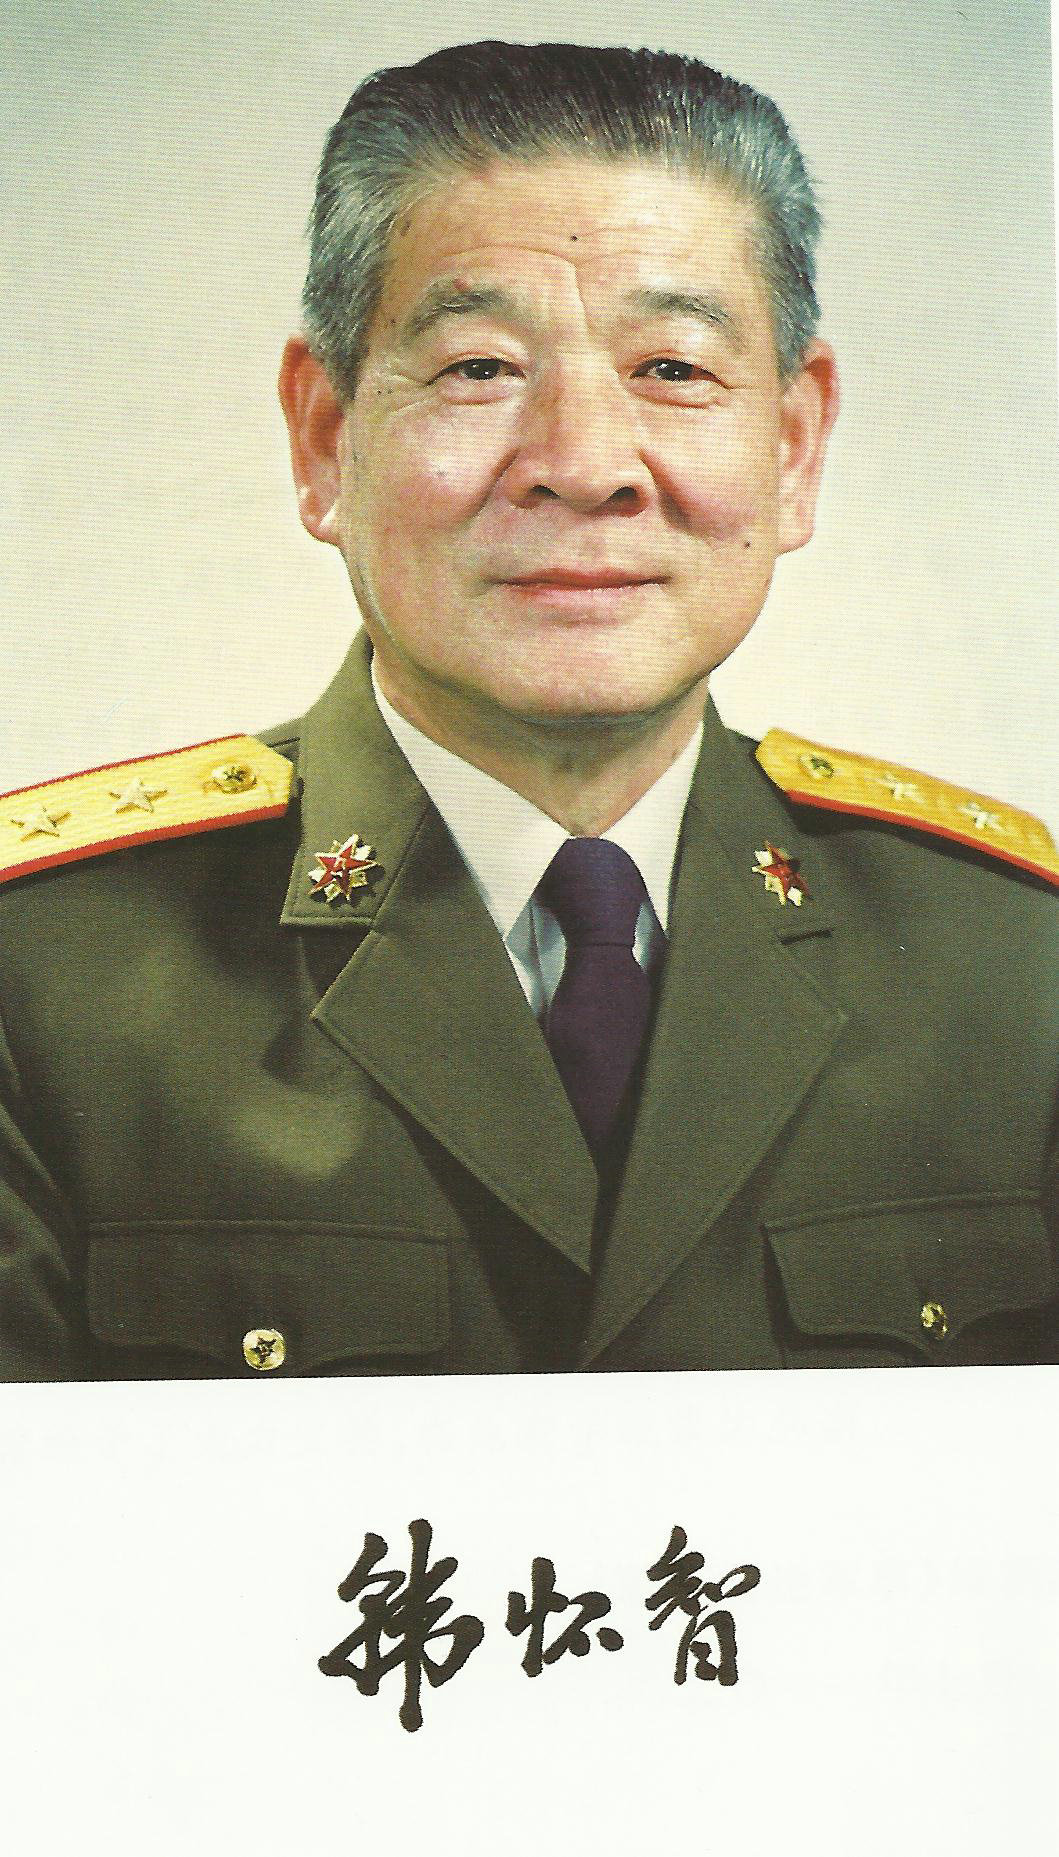 韩怀智中将，《高山下的花环》里雷军长的原型之一，其子也是少将